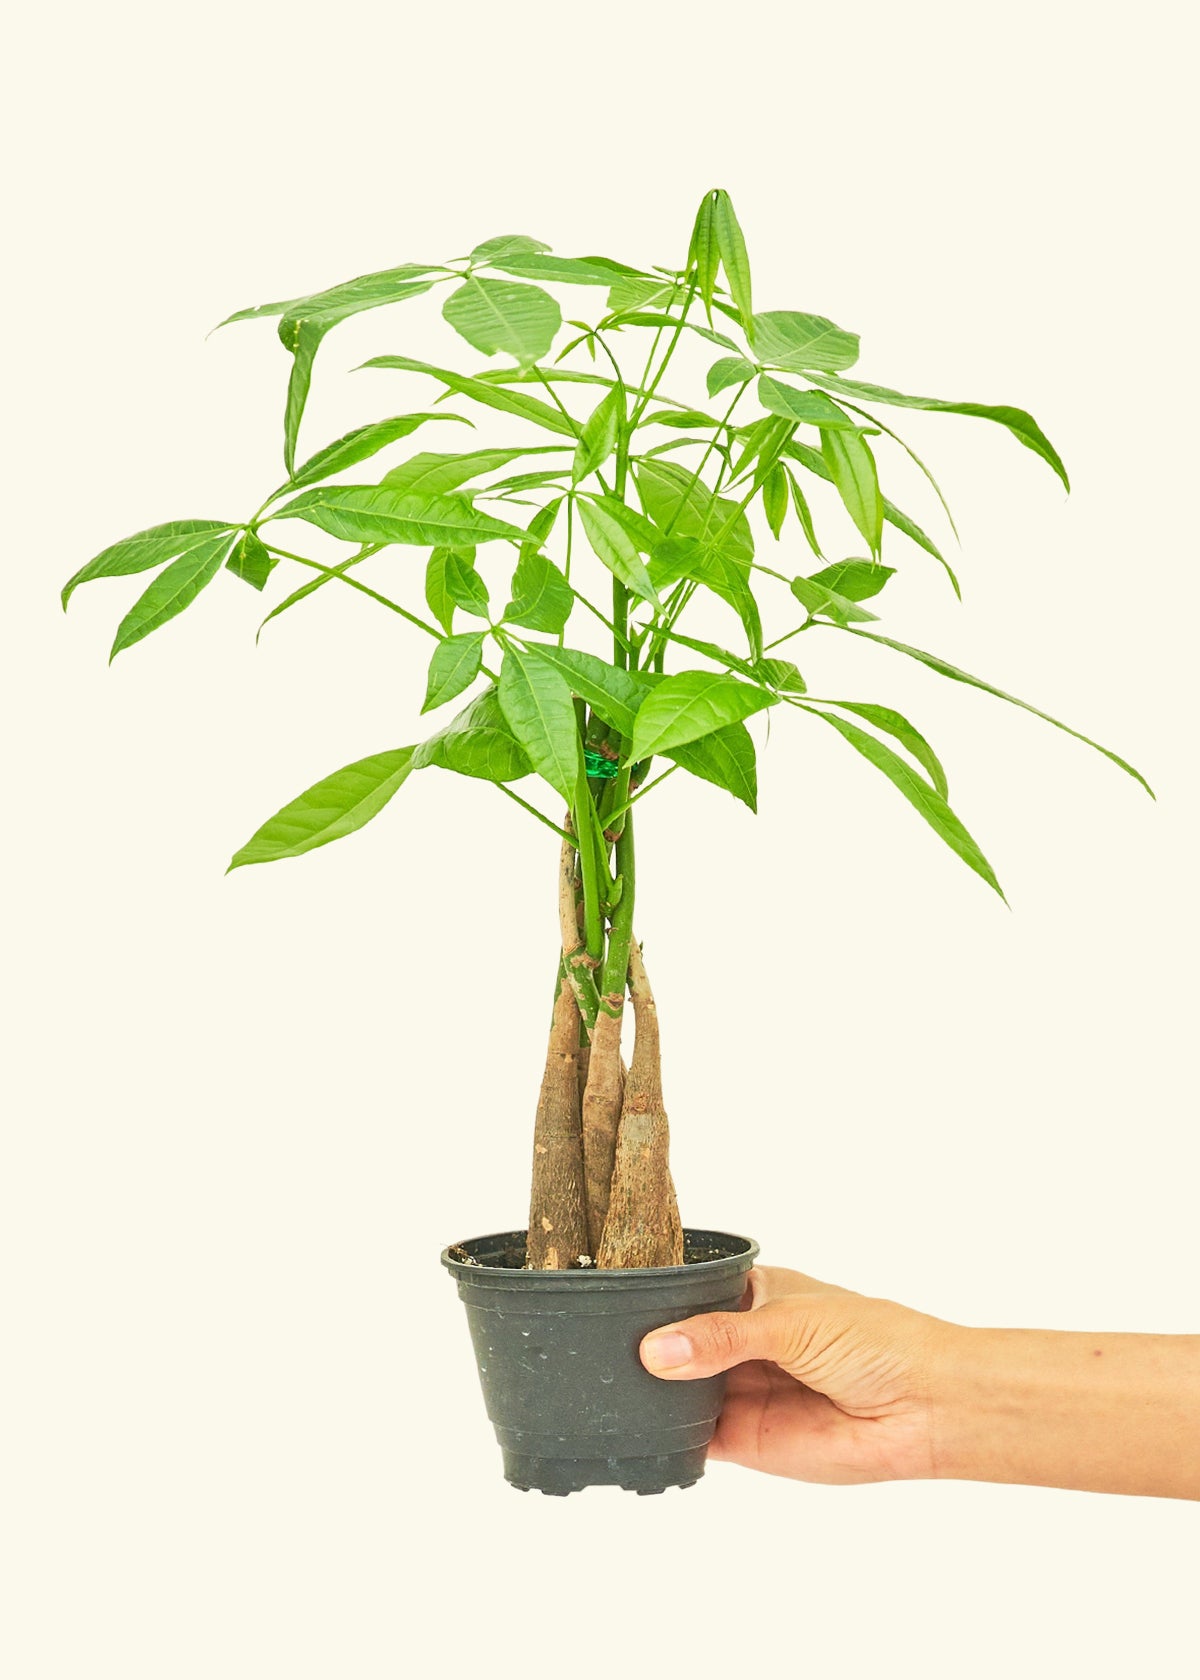 4" Money Tree in Grow Pot